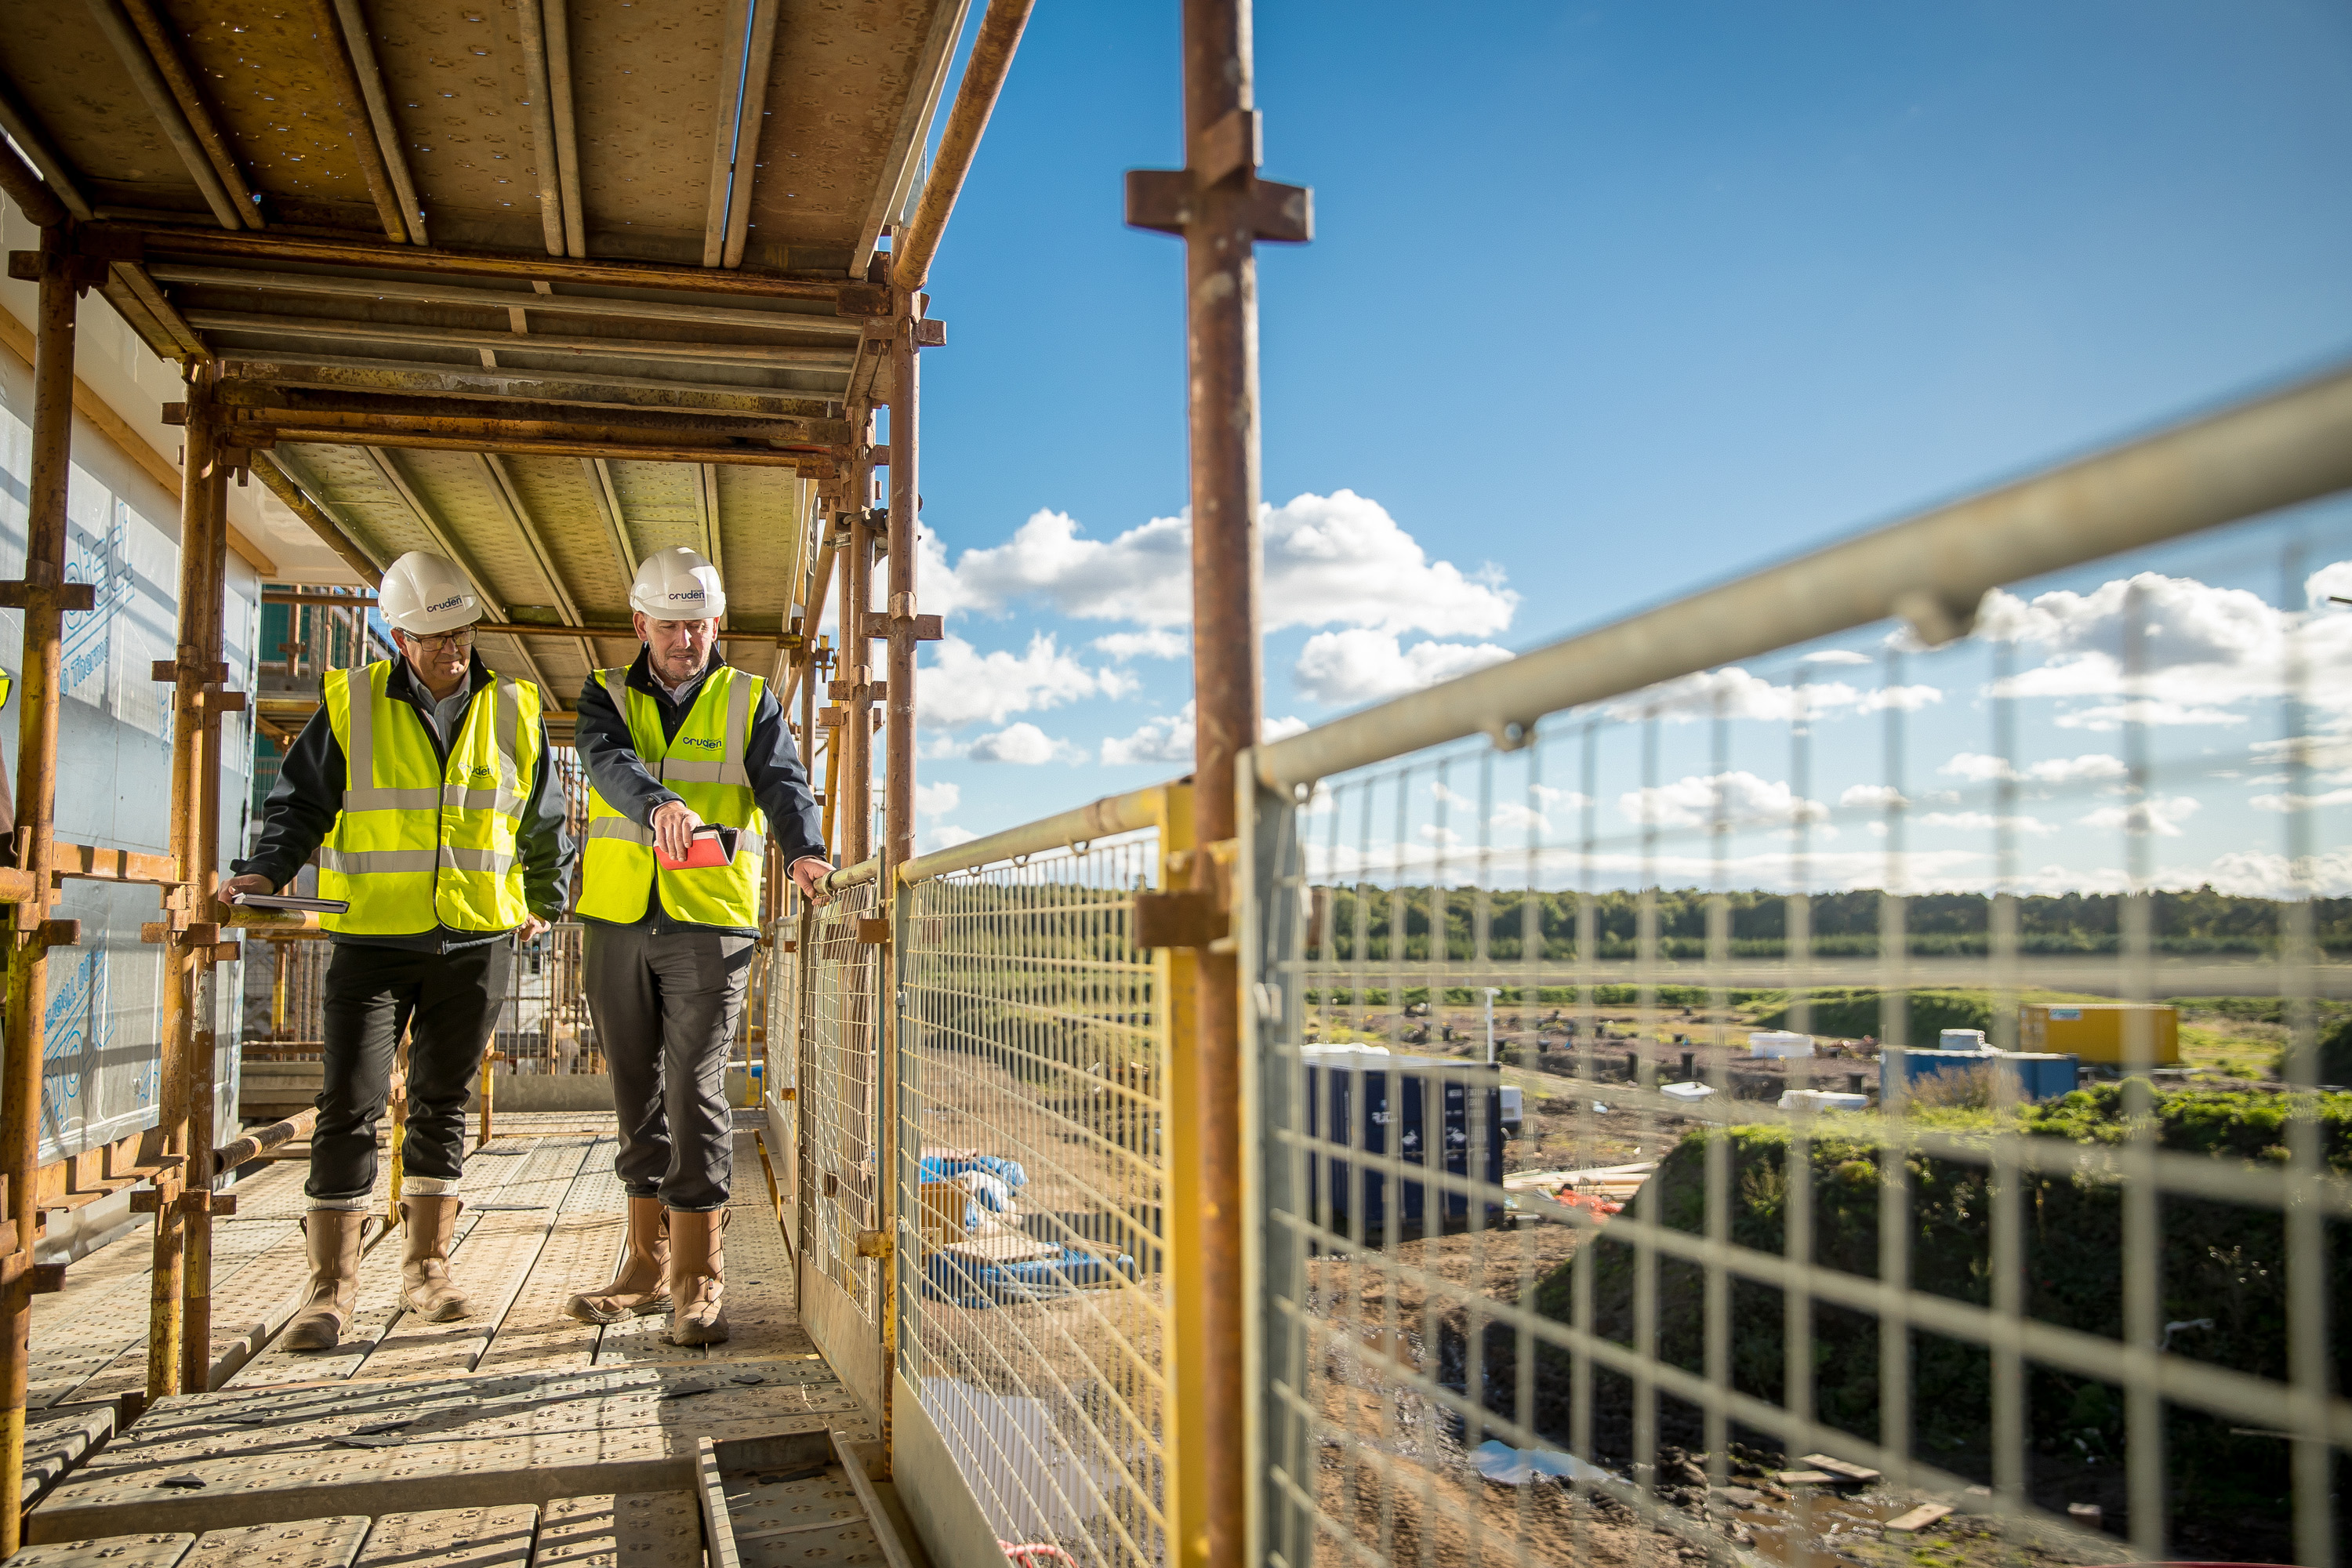 Work gets underway at new riverside development in Stirling